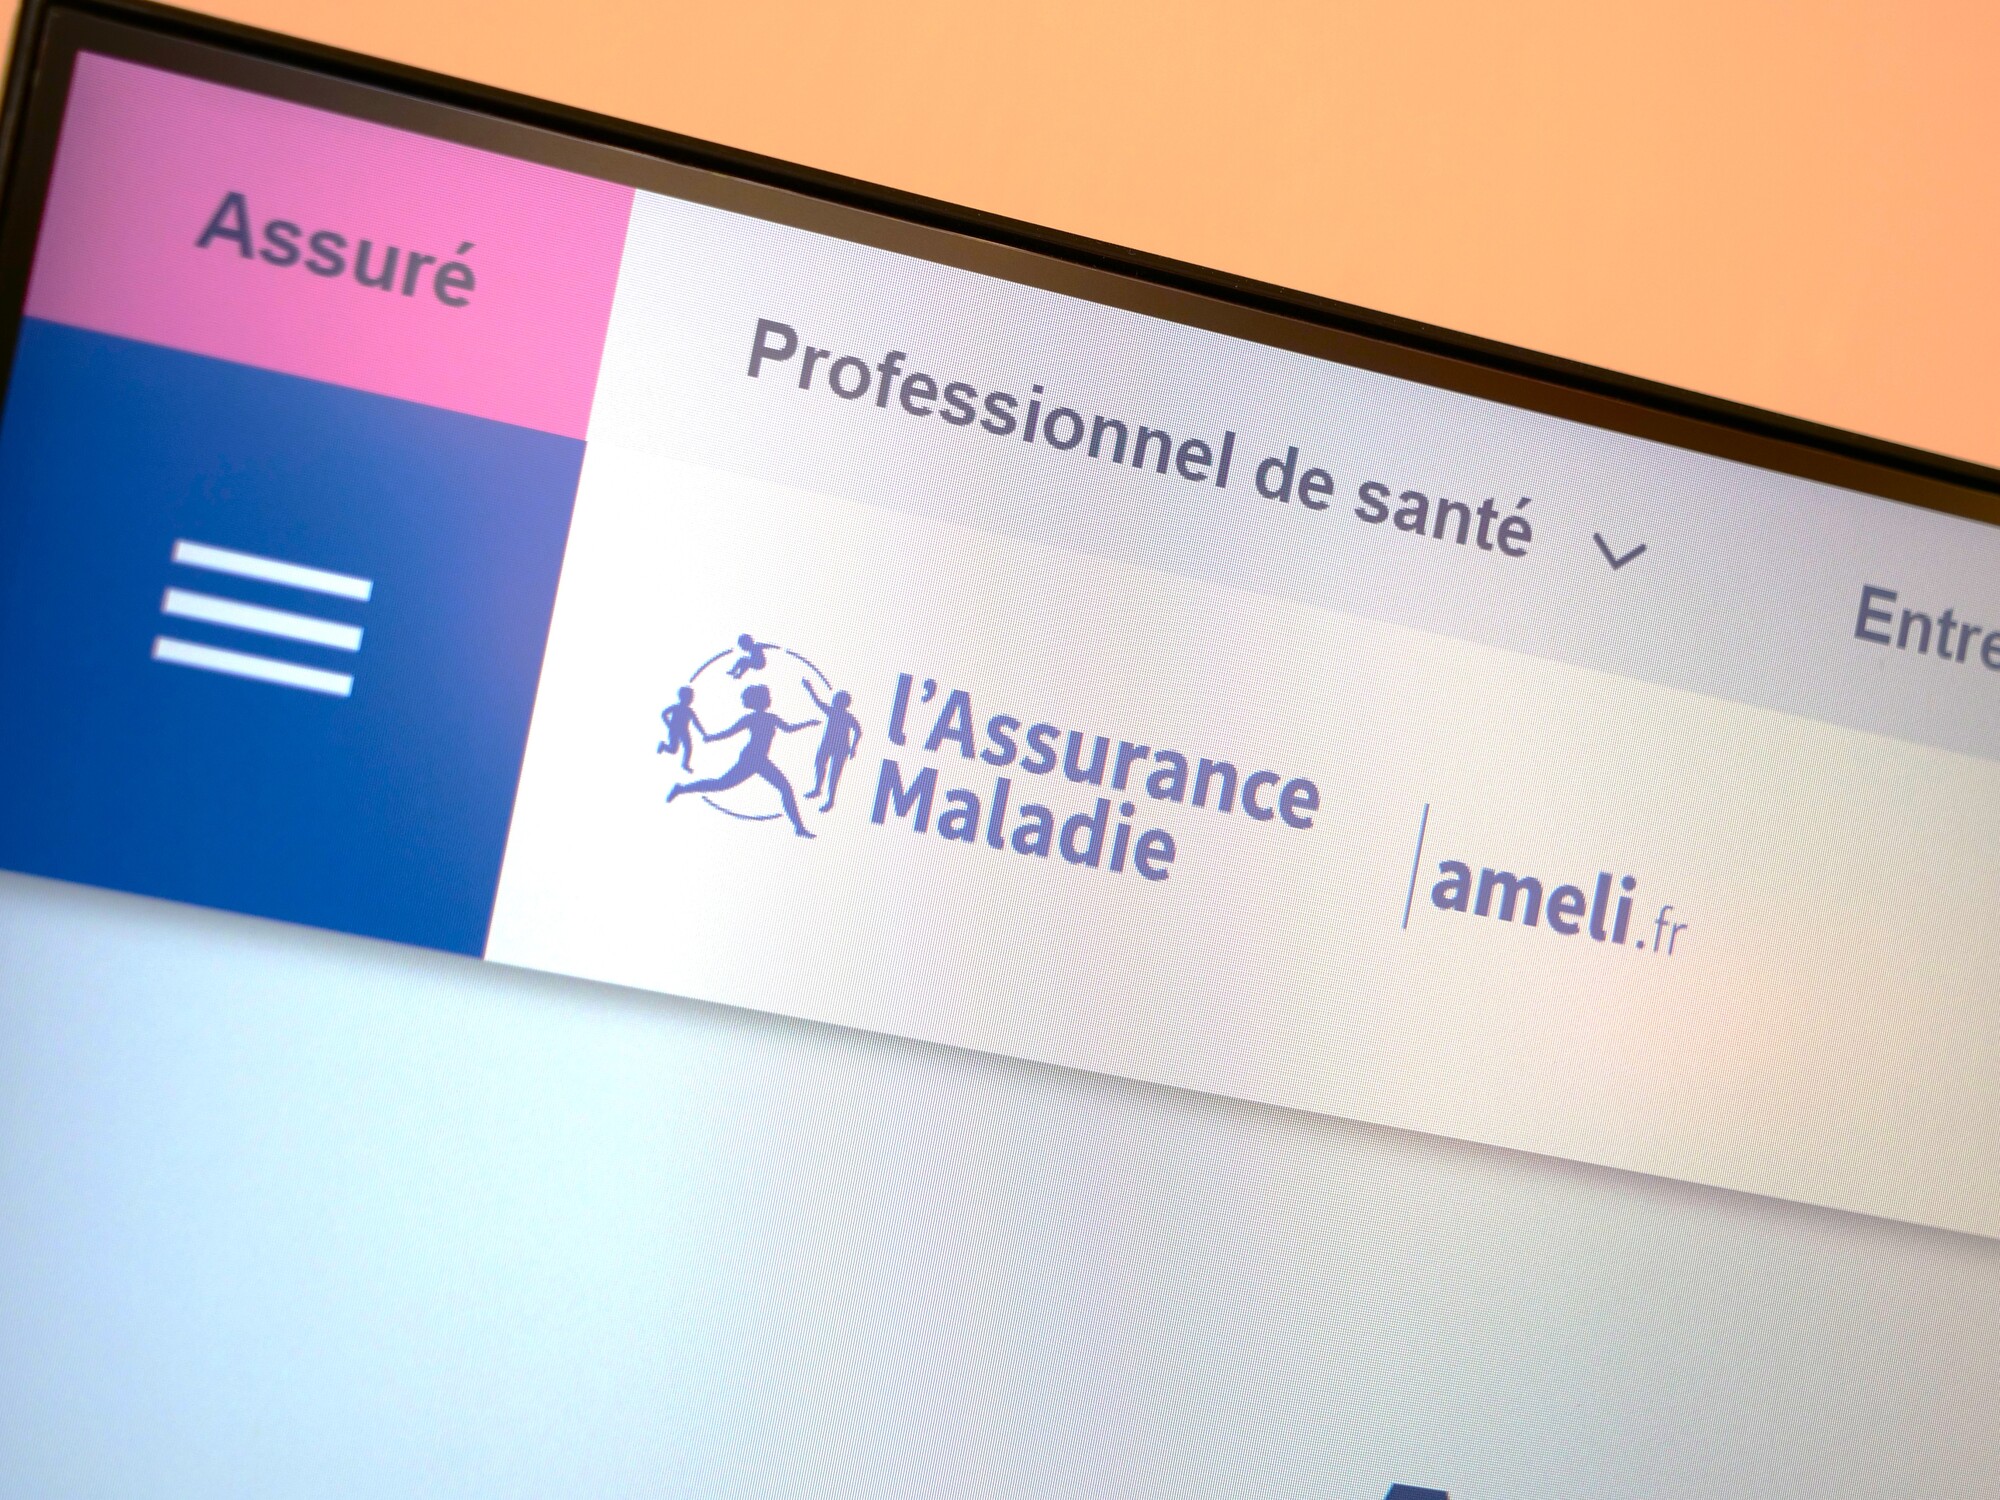 Ameli.fr, le site de l'Assurance maladie, s'offre un lifting pour plus de clarté dans vos démarches, et c'est très réussi